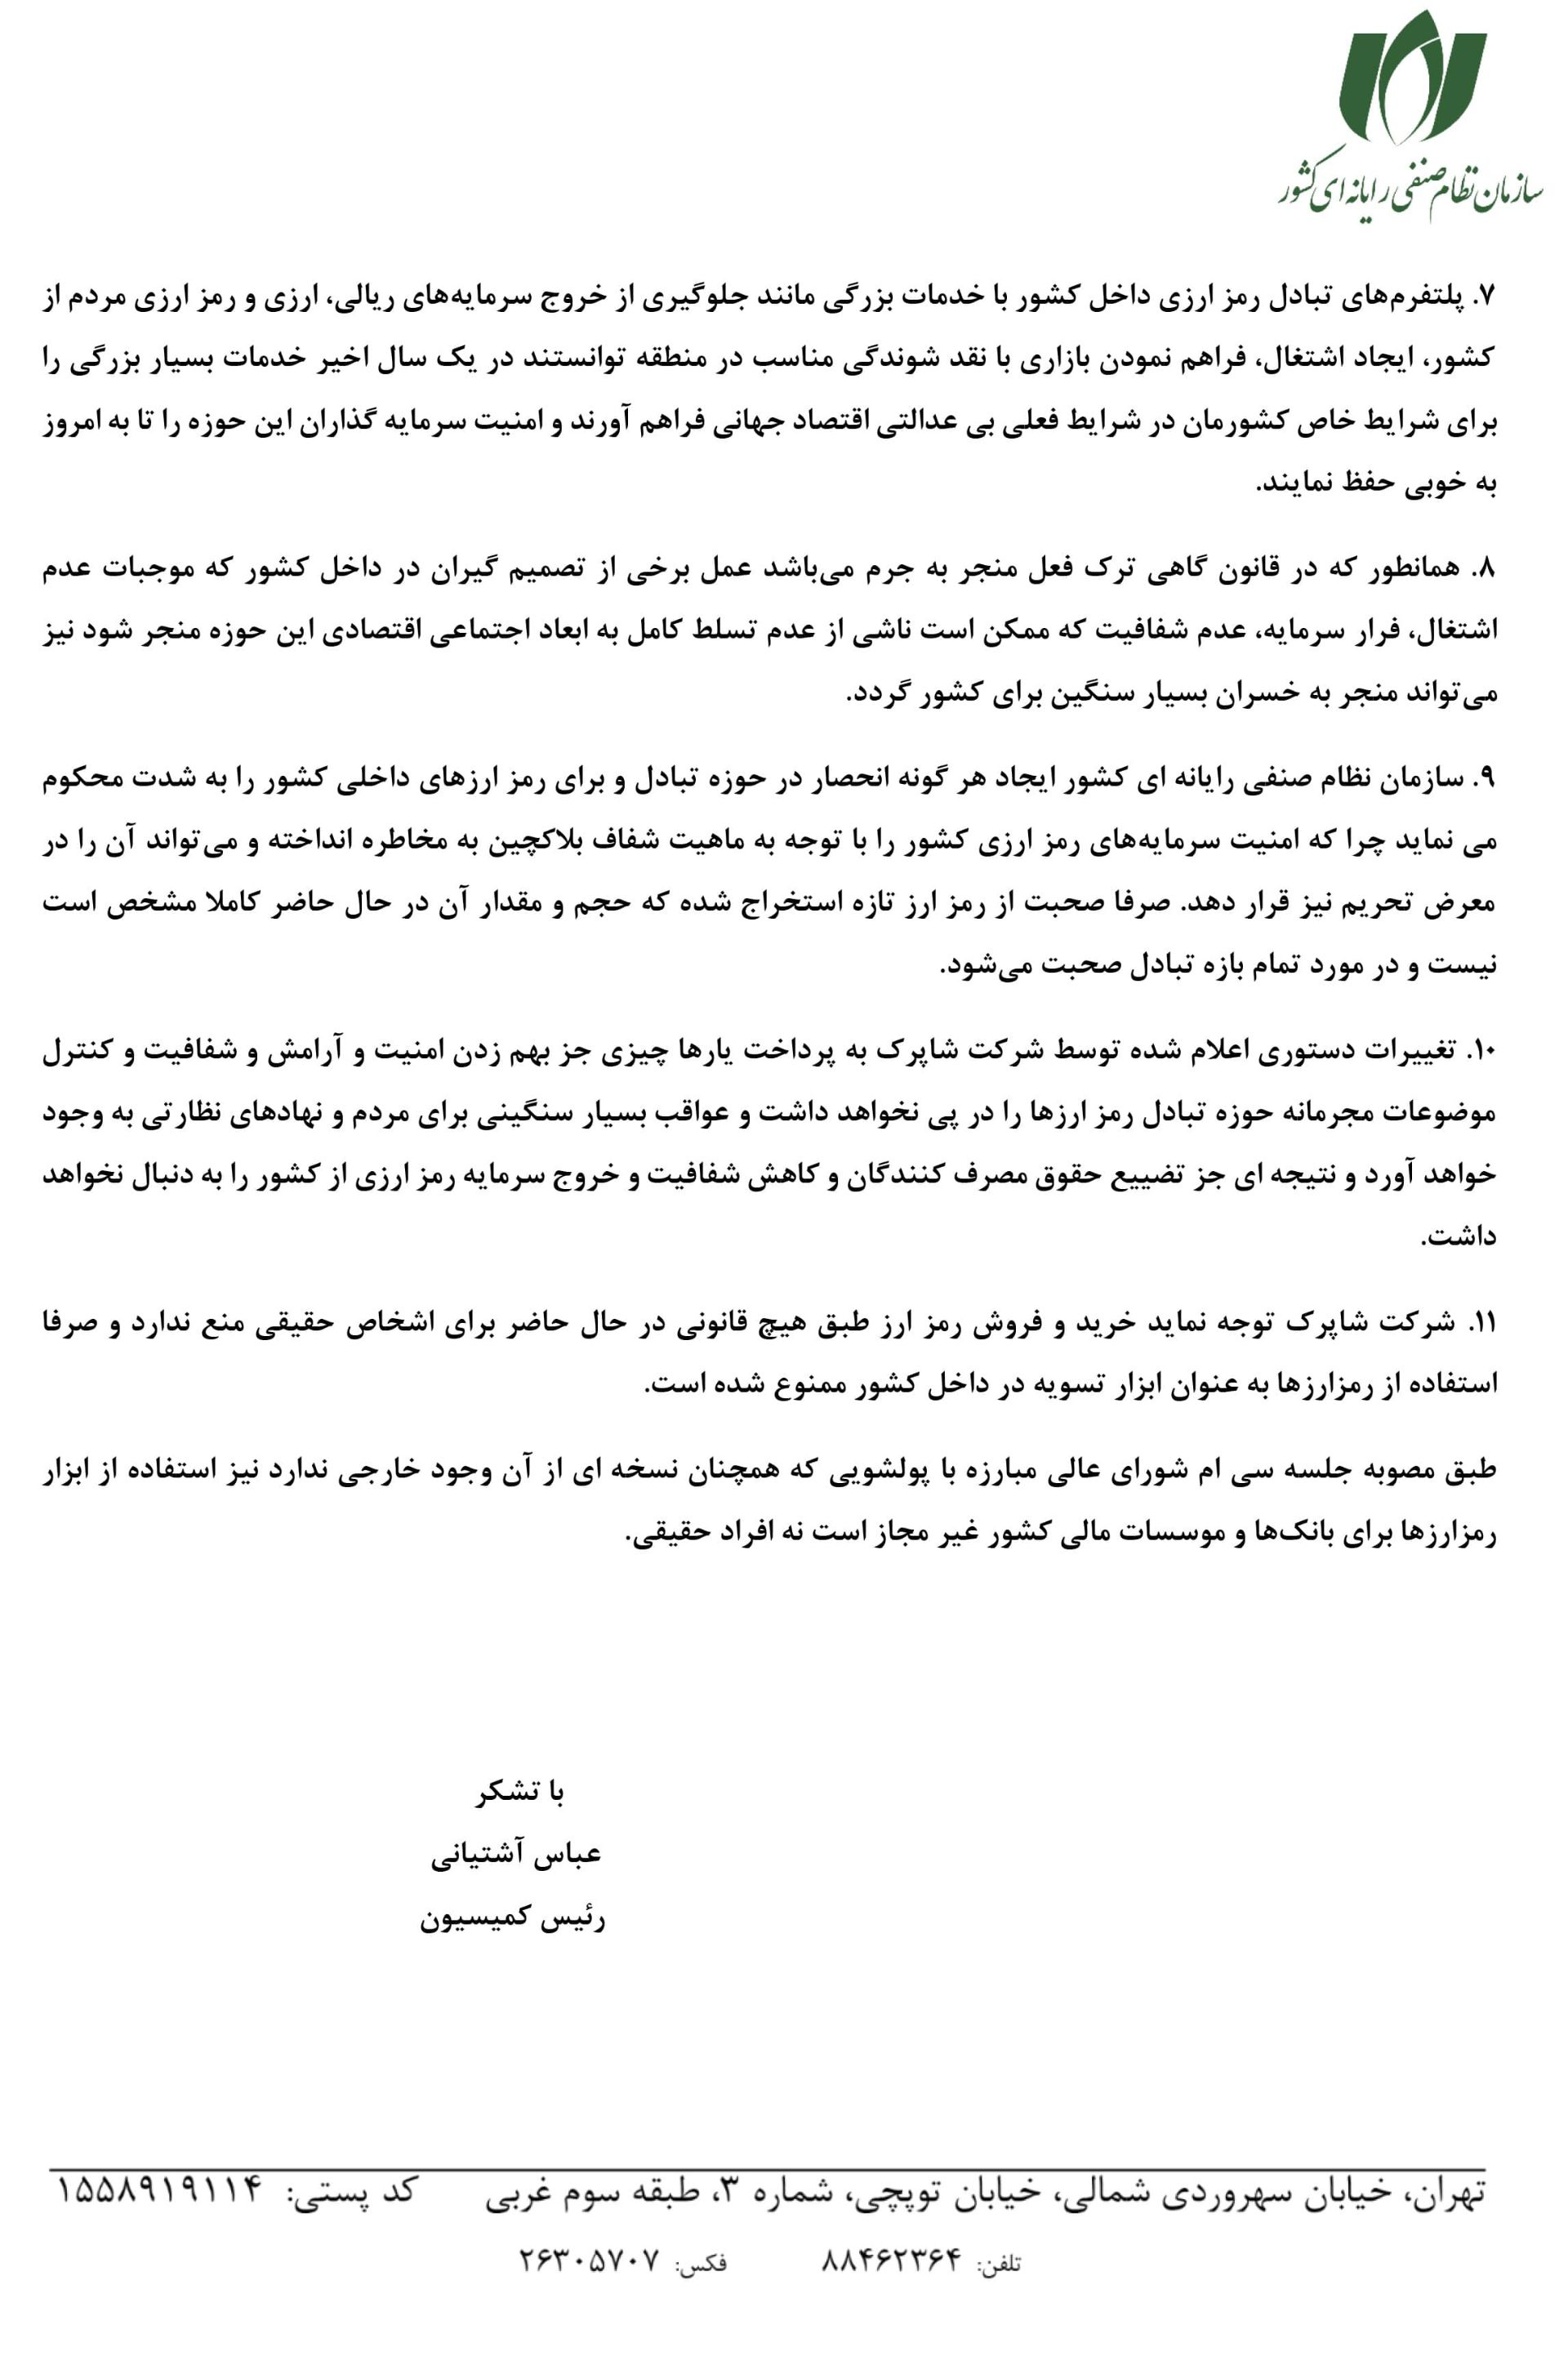 صفحه دوم بیانیه کمیسیون رمزارز و بلاکچین سازمان نصر